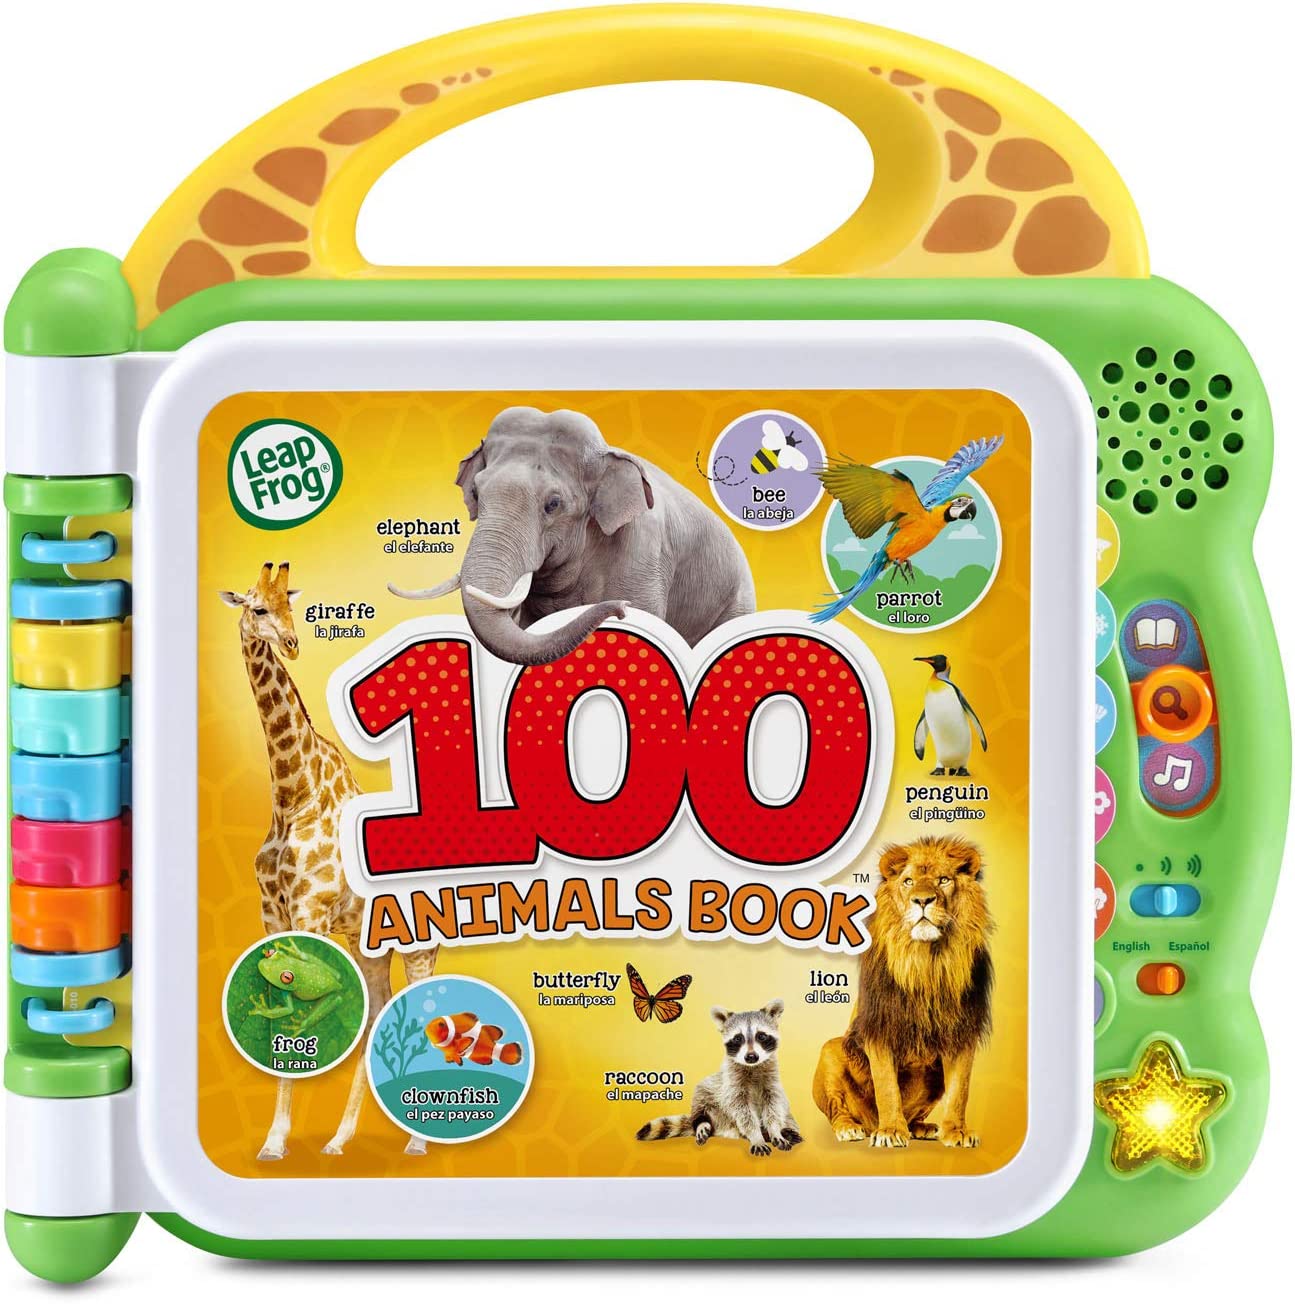 リープフロッグ ラーニング アニマルブック 100 ワード 動物 子ども 知育 英語 おもちゃ LeapFrog 並行輸入品